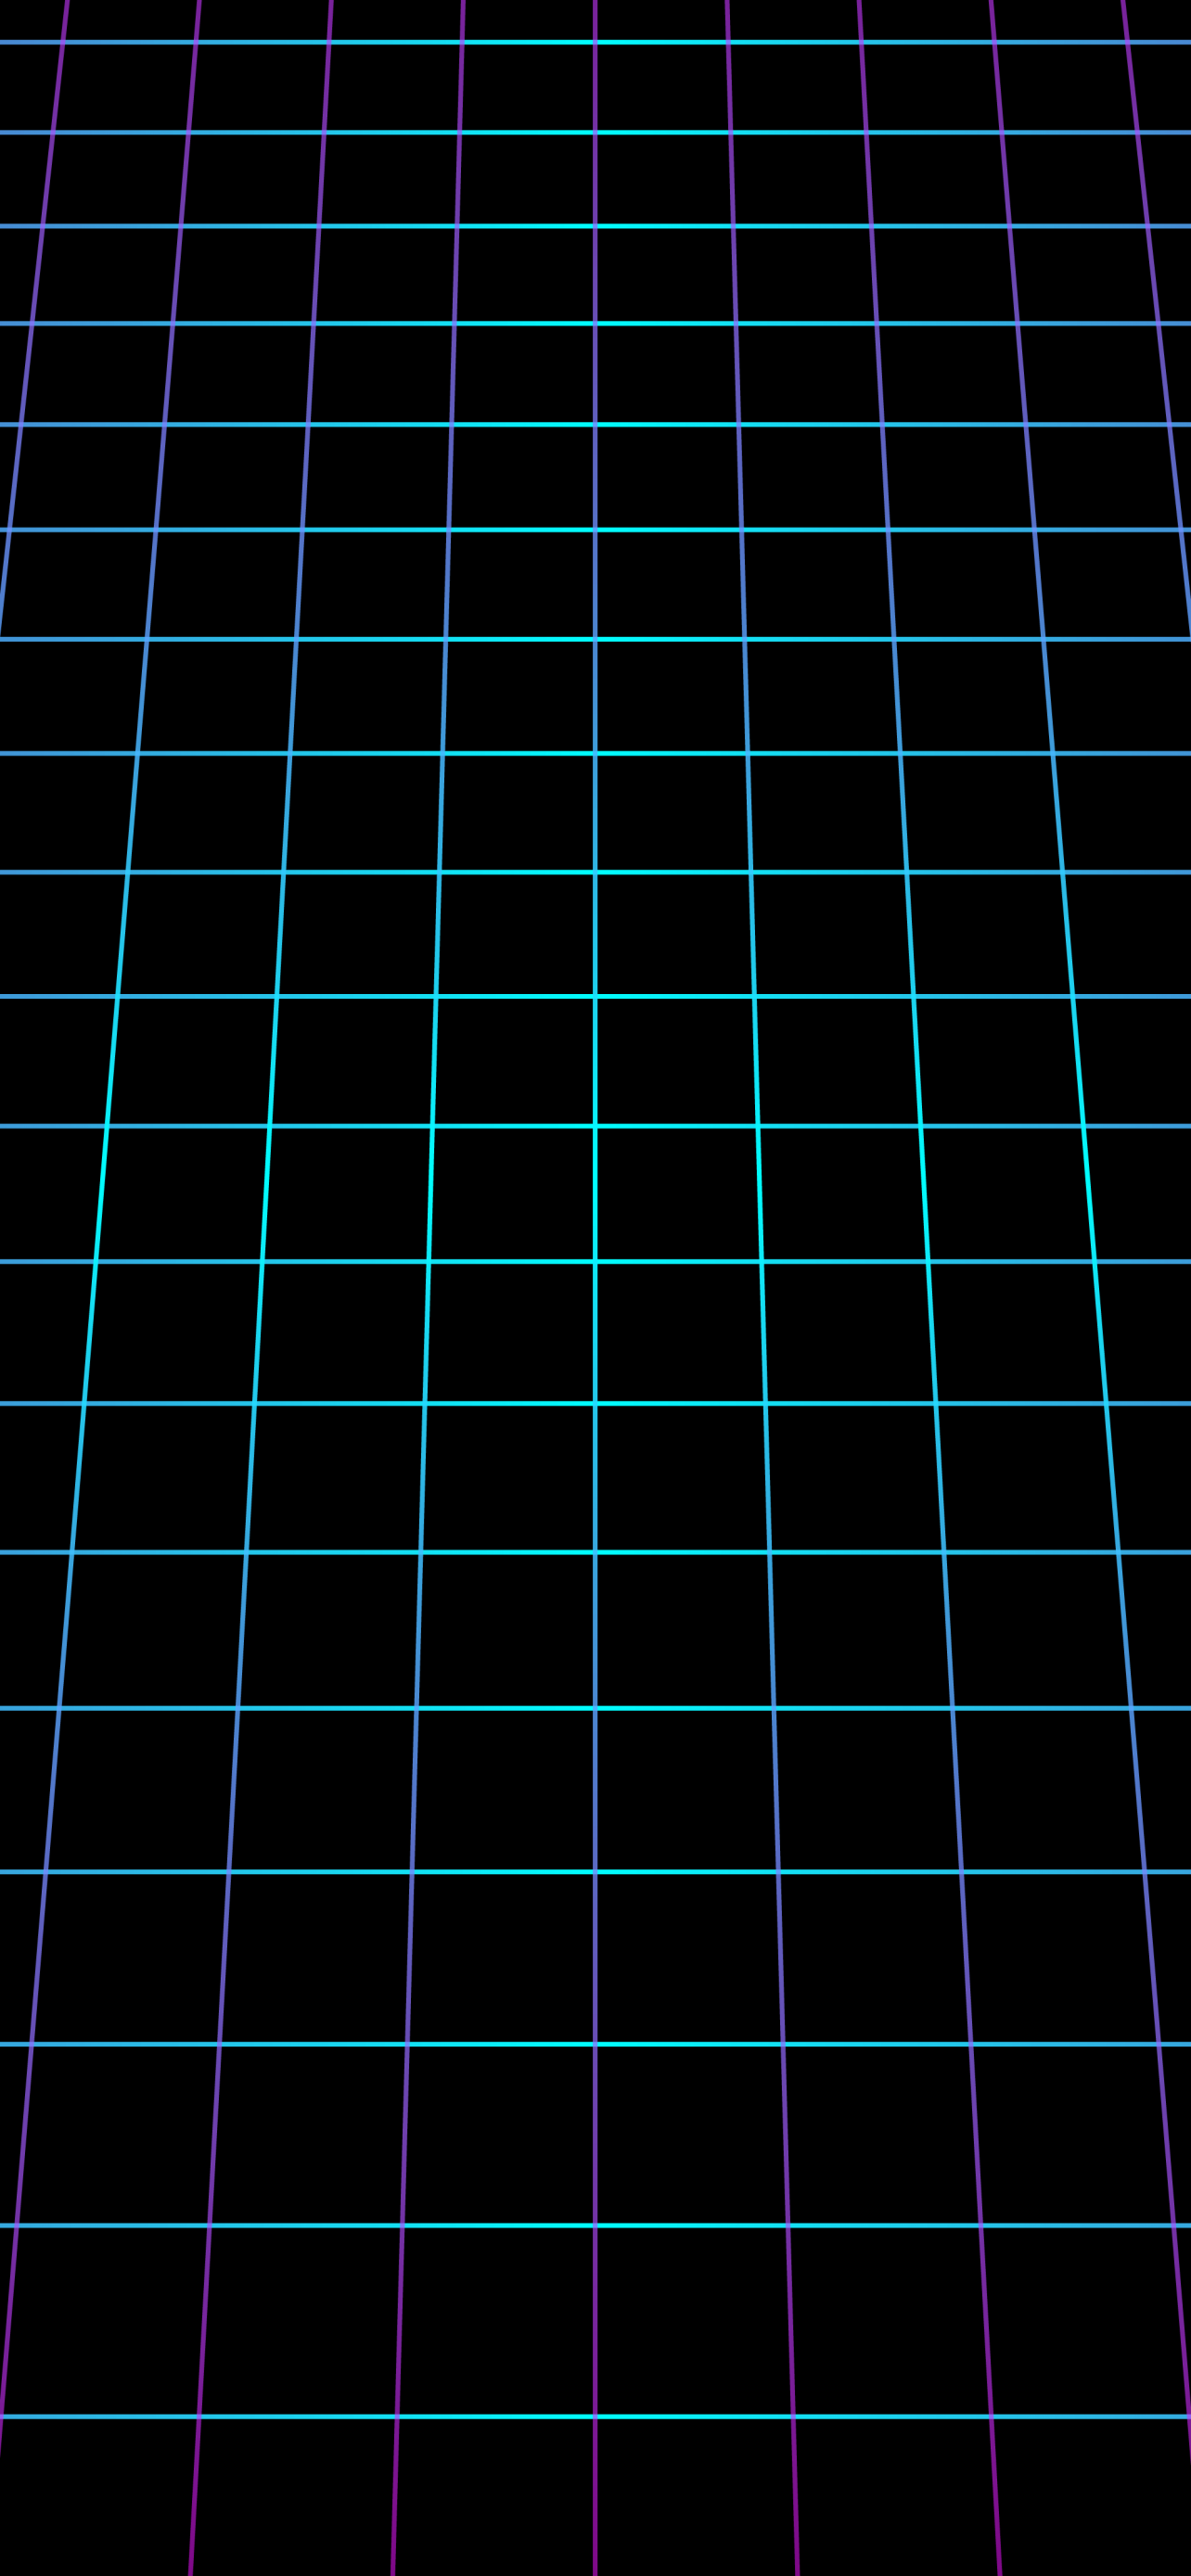 Chọn tấm nền hình lưới Neon đen sẽ là sự lựa chọn đúng đắn cho những ai thích sự đơn giản nhưng cũng không kém phần phong cách. Bảng màu đen và neon sẽ tạo nên một màn hình điện thoại độc đáo, tinh tế và đầy ấn tượng.